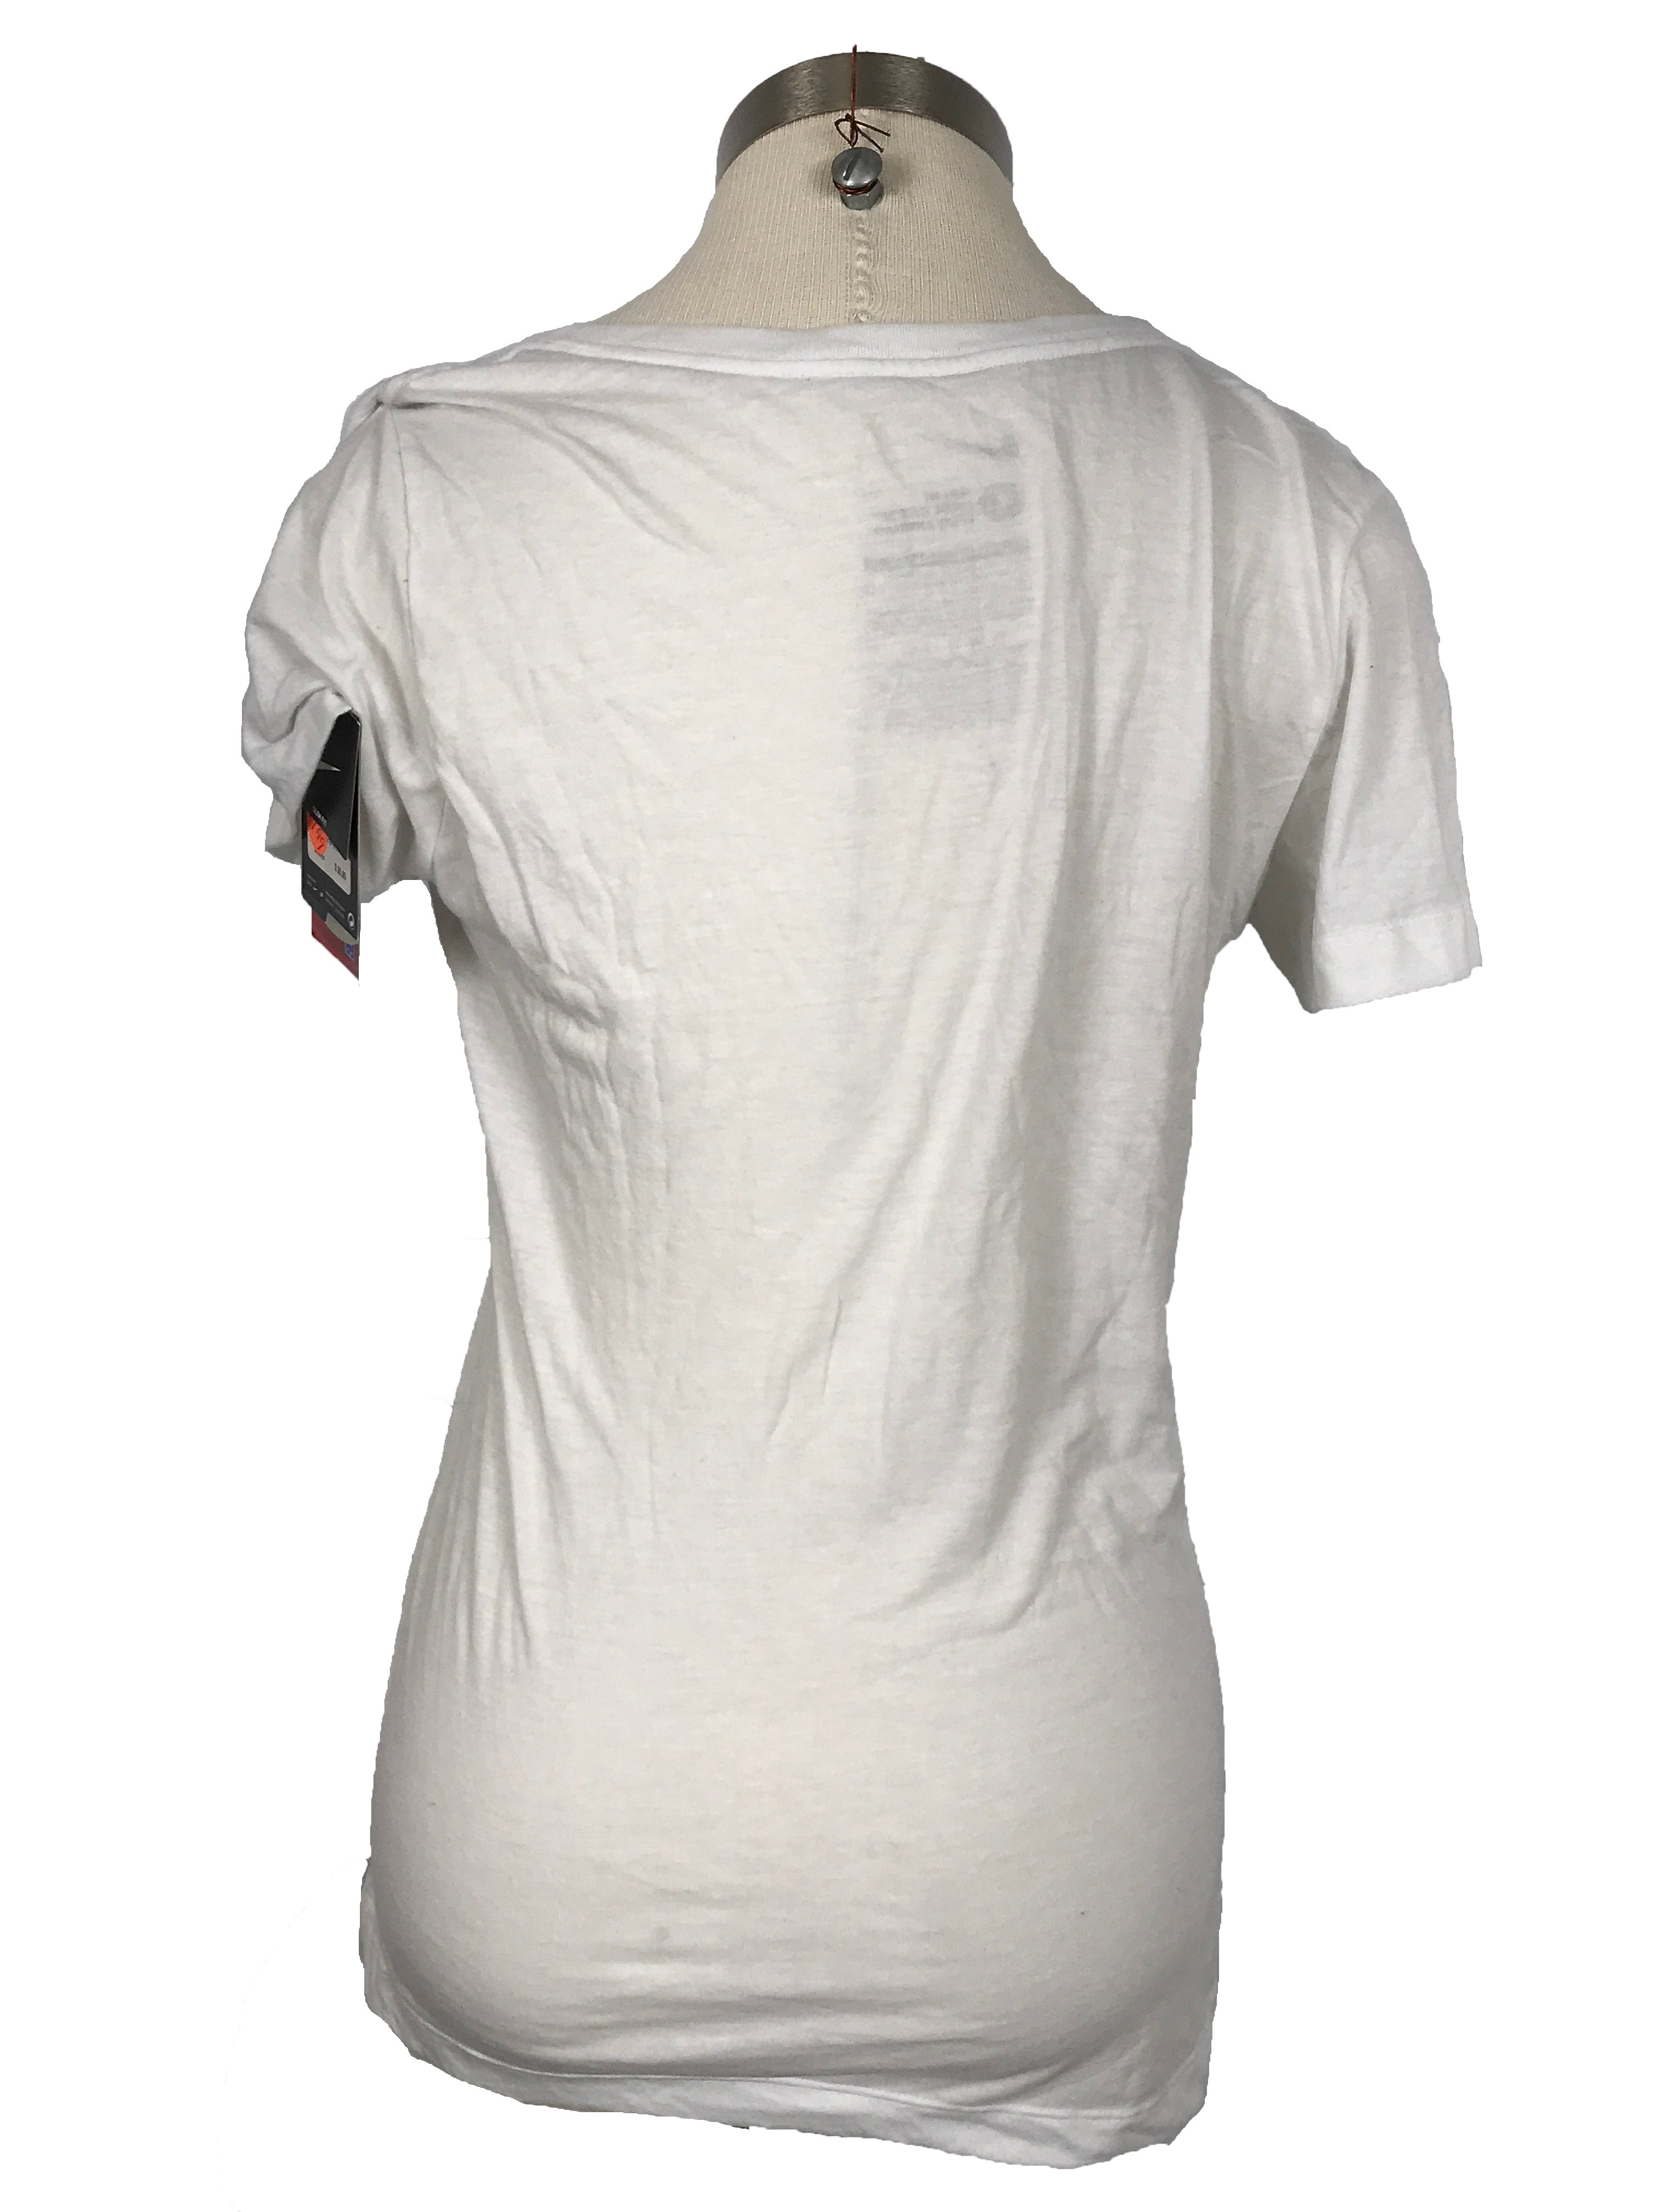 Nike MSU White V-Neck T-Shirt Women's Size L